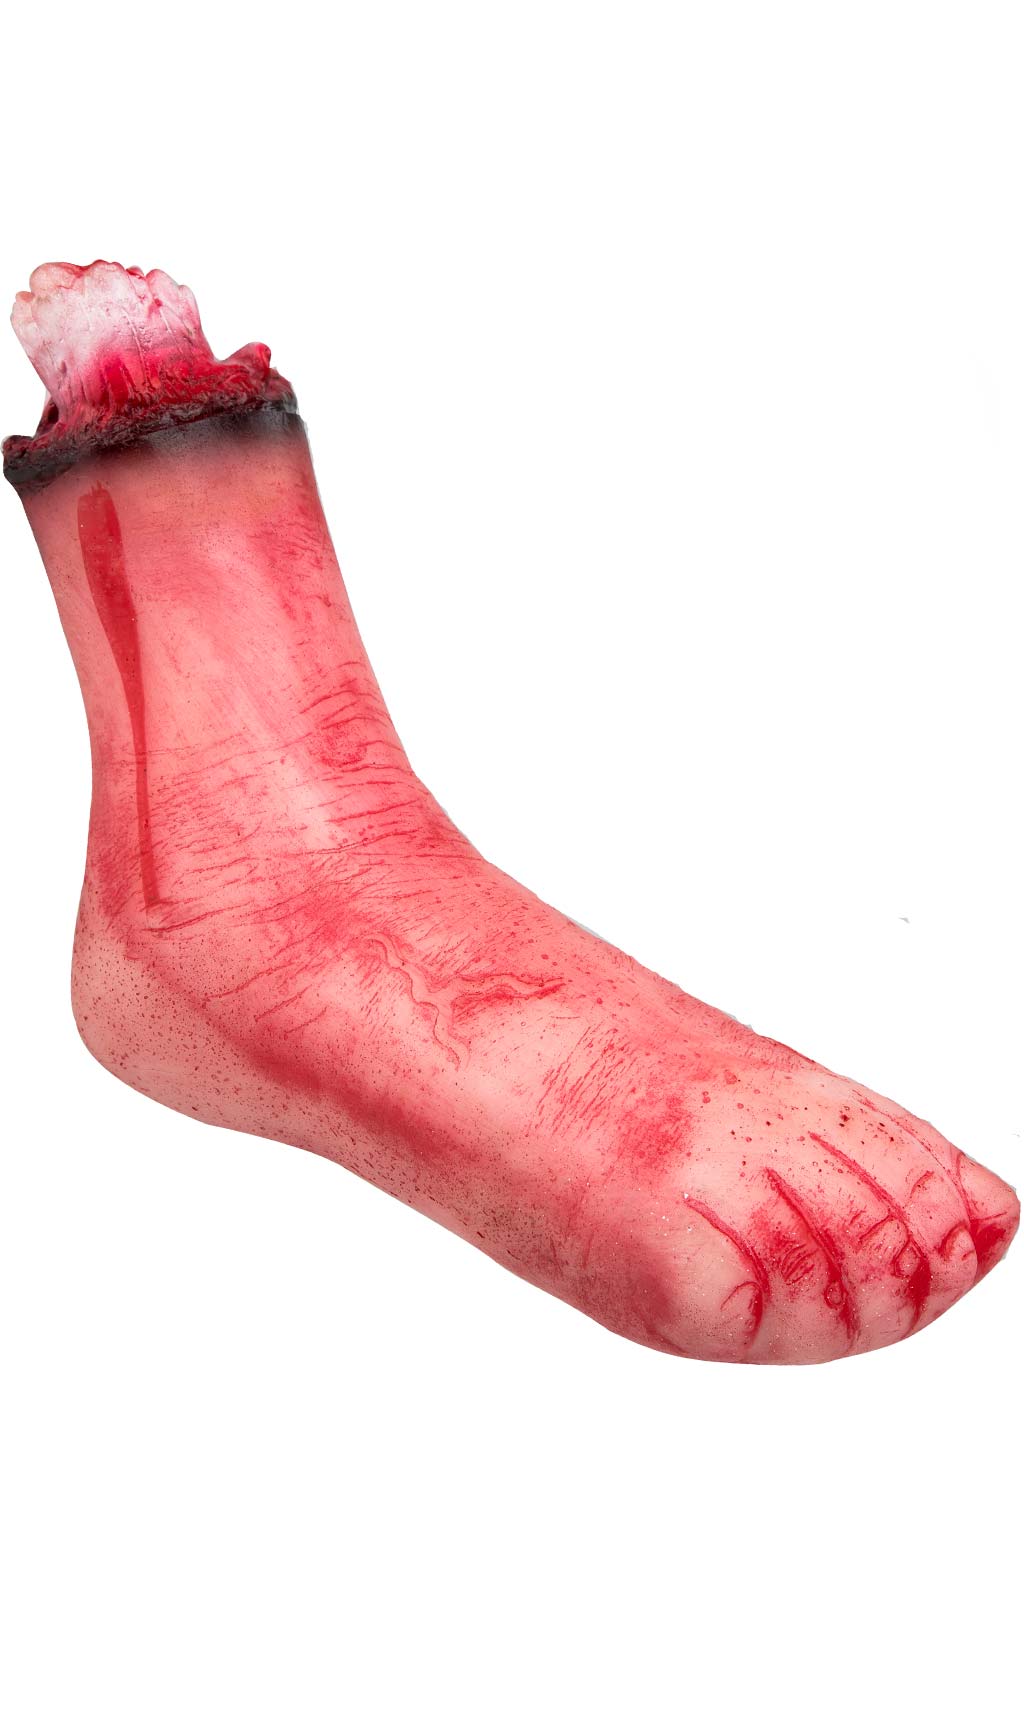 Blutiger Fuß amputiert